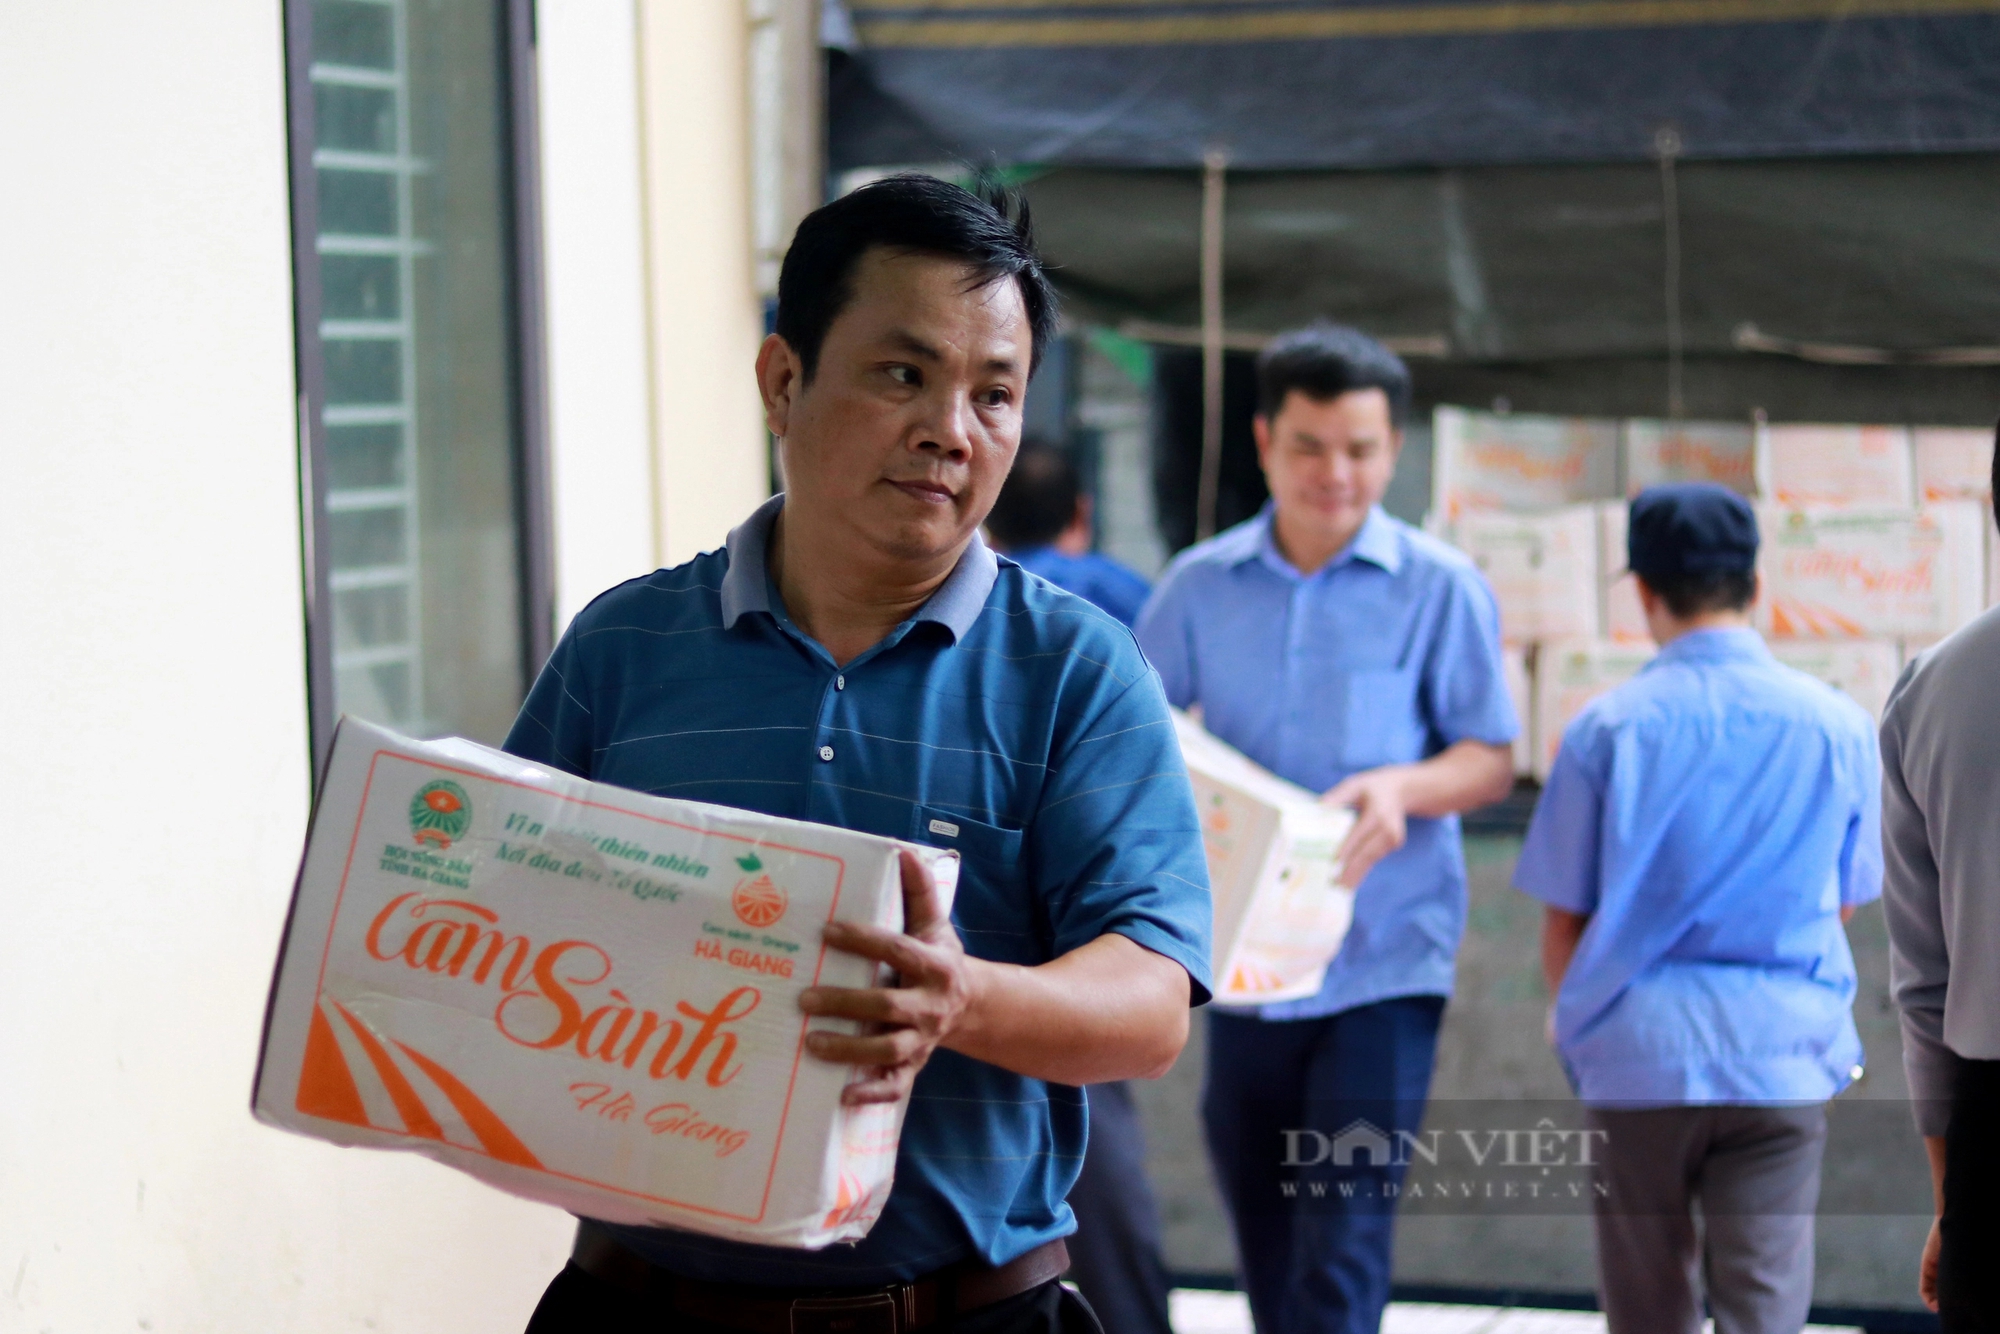 Hội Nông dân Hà Tĩnh hỗ trợ tiêu thụ 18 tấn cam sành cho nông dân Hà Giang - Ảnh 4.